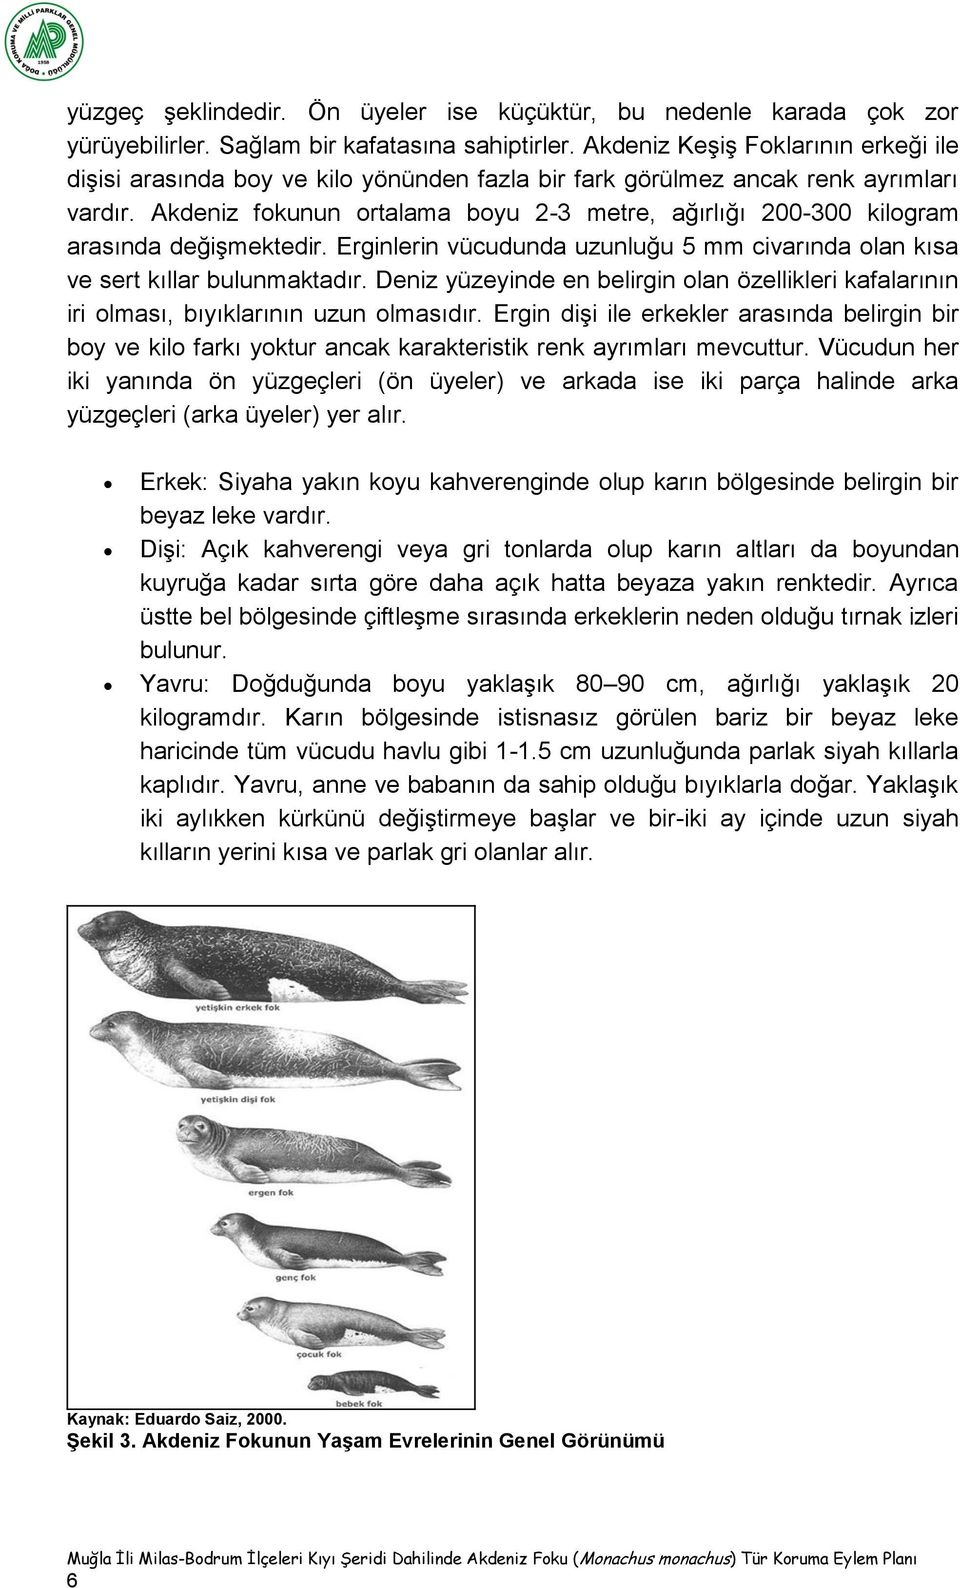 Akdeniz fokunun ortalama boyu 2-3 metre, ağırlığı 200-300 kilogram arasında değişmektedir. Erginlerin vücudunda uzunluğu 5 mm civarında olan kısa ve sert kıllar bulunmaktadır.